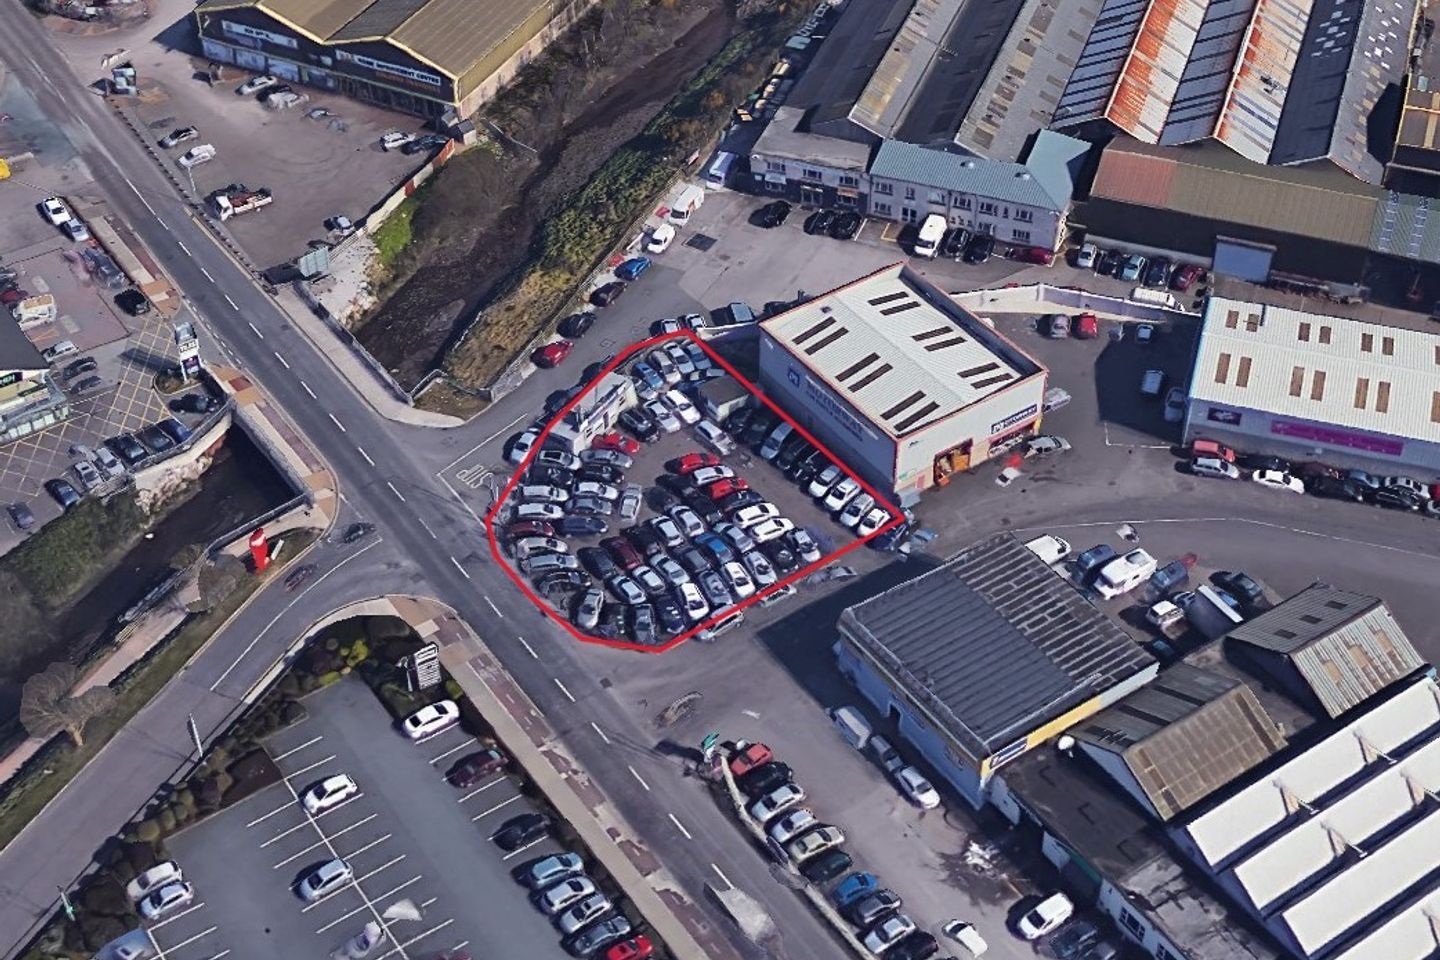 10,000 sq.ft Sales Forecourt Compound at Kinsale Road Business Park, Kinsale Road, Kinsale, Co. Cork